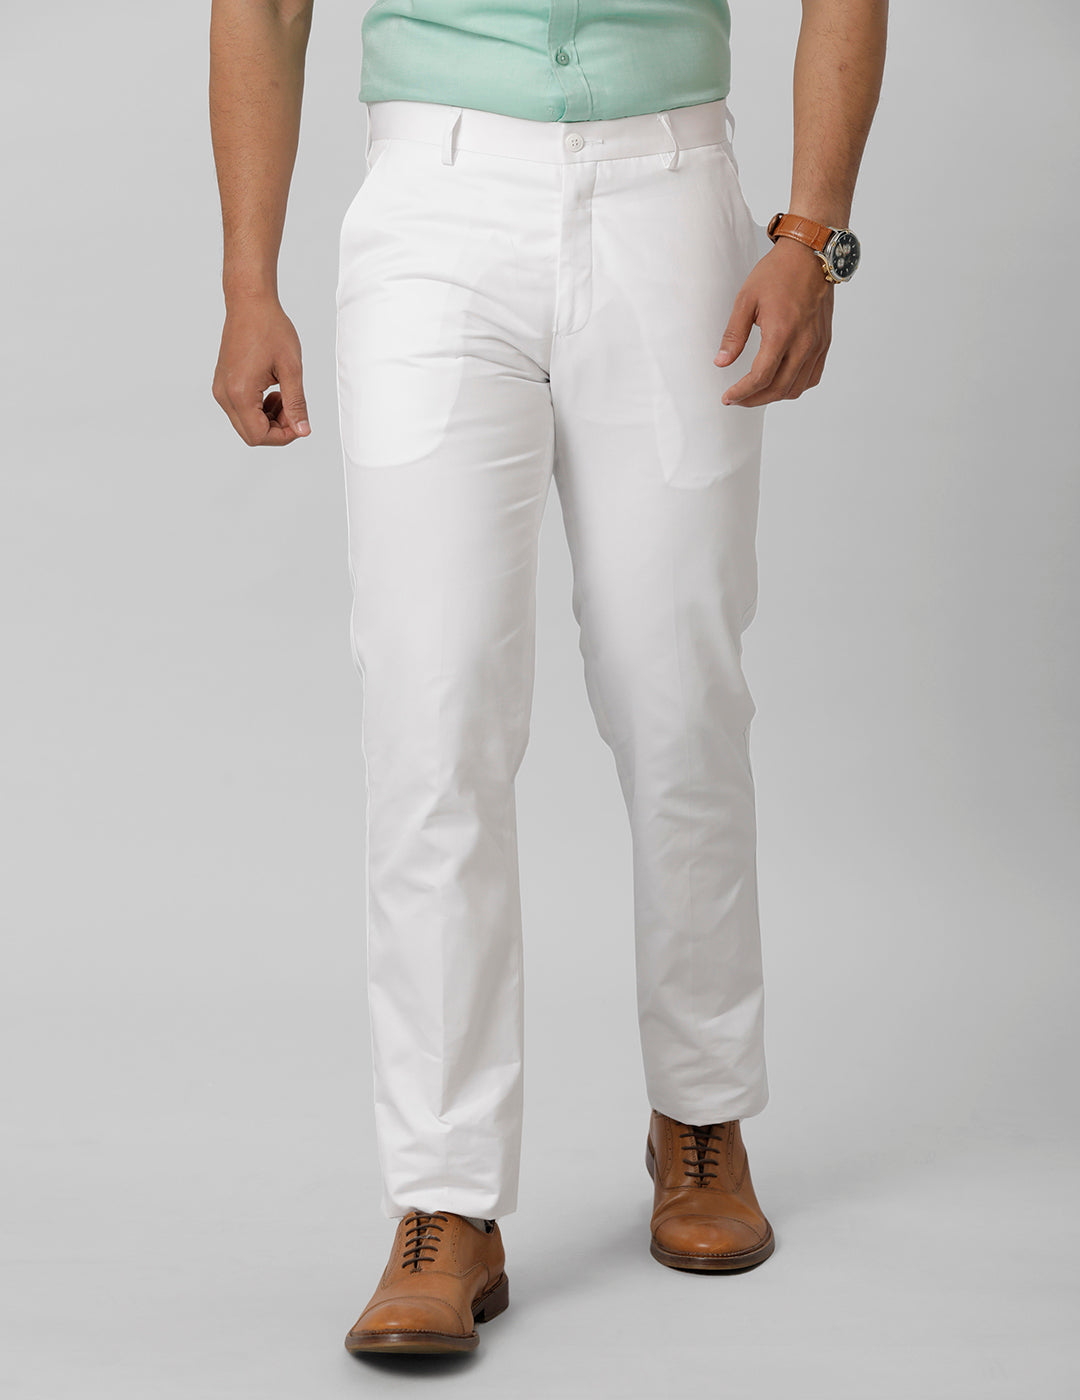 Cotton Pants, Cotton Pants for Men, White Cotton Pants Mens